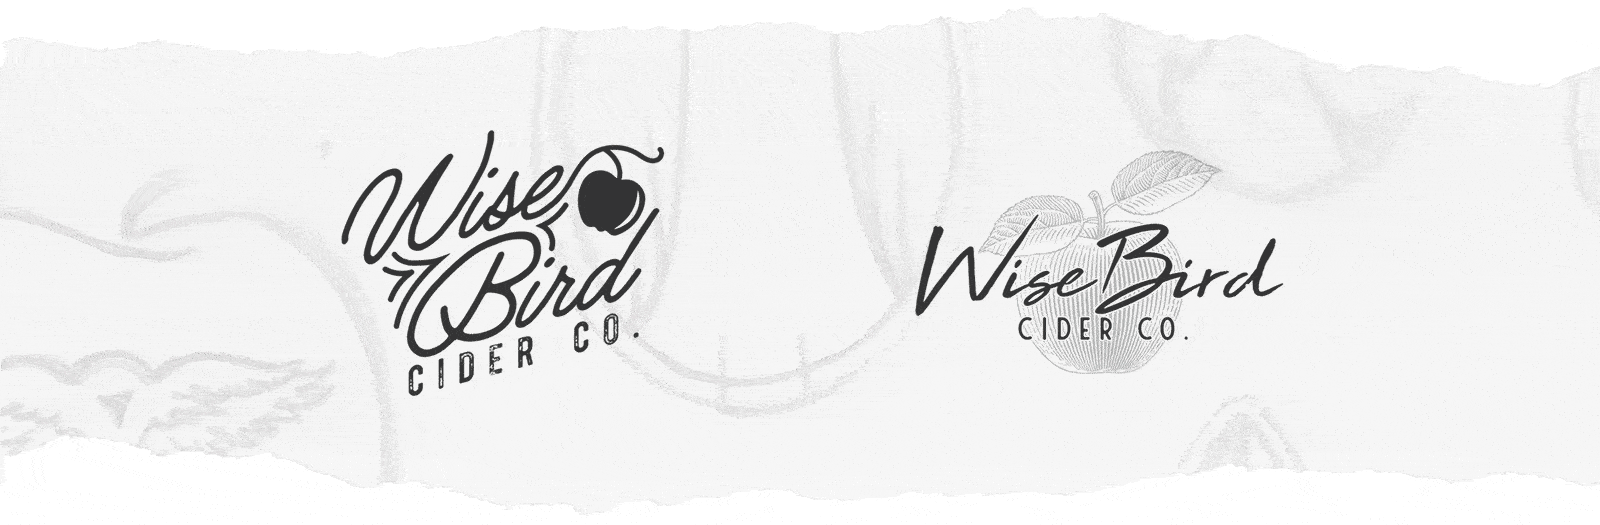 cider beer logo branding